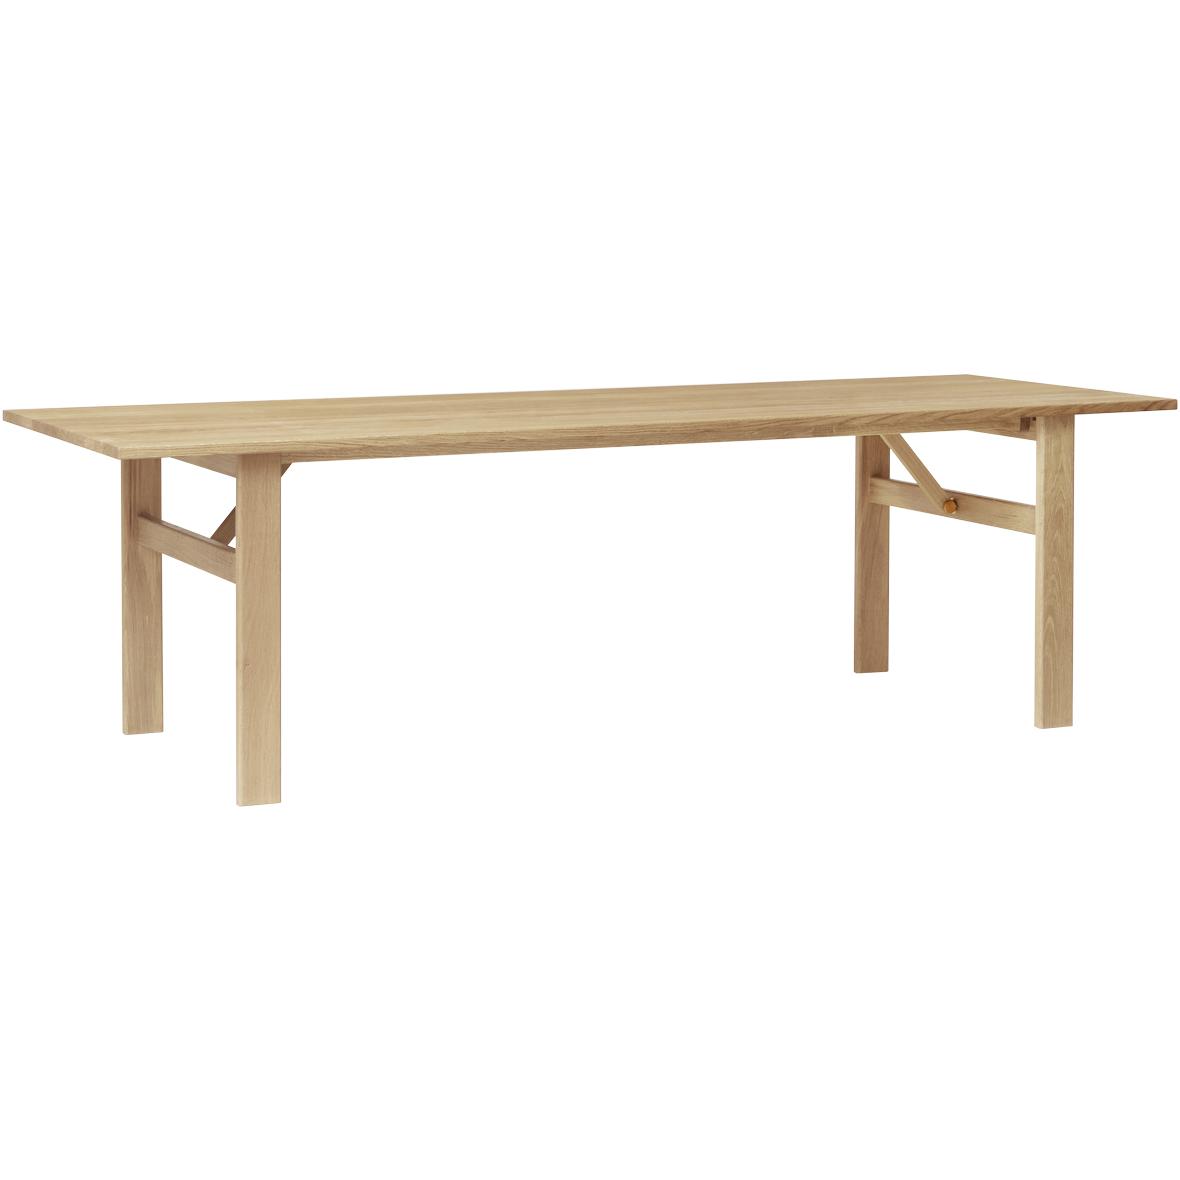 Formulář a zdokonalovat damsbo jídelní stůl 245 cm, bílý pigmentovaný dub